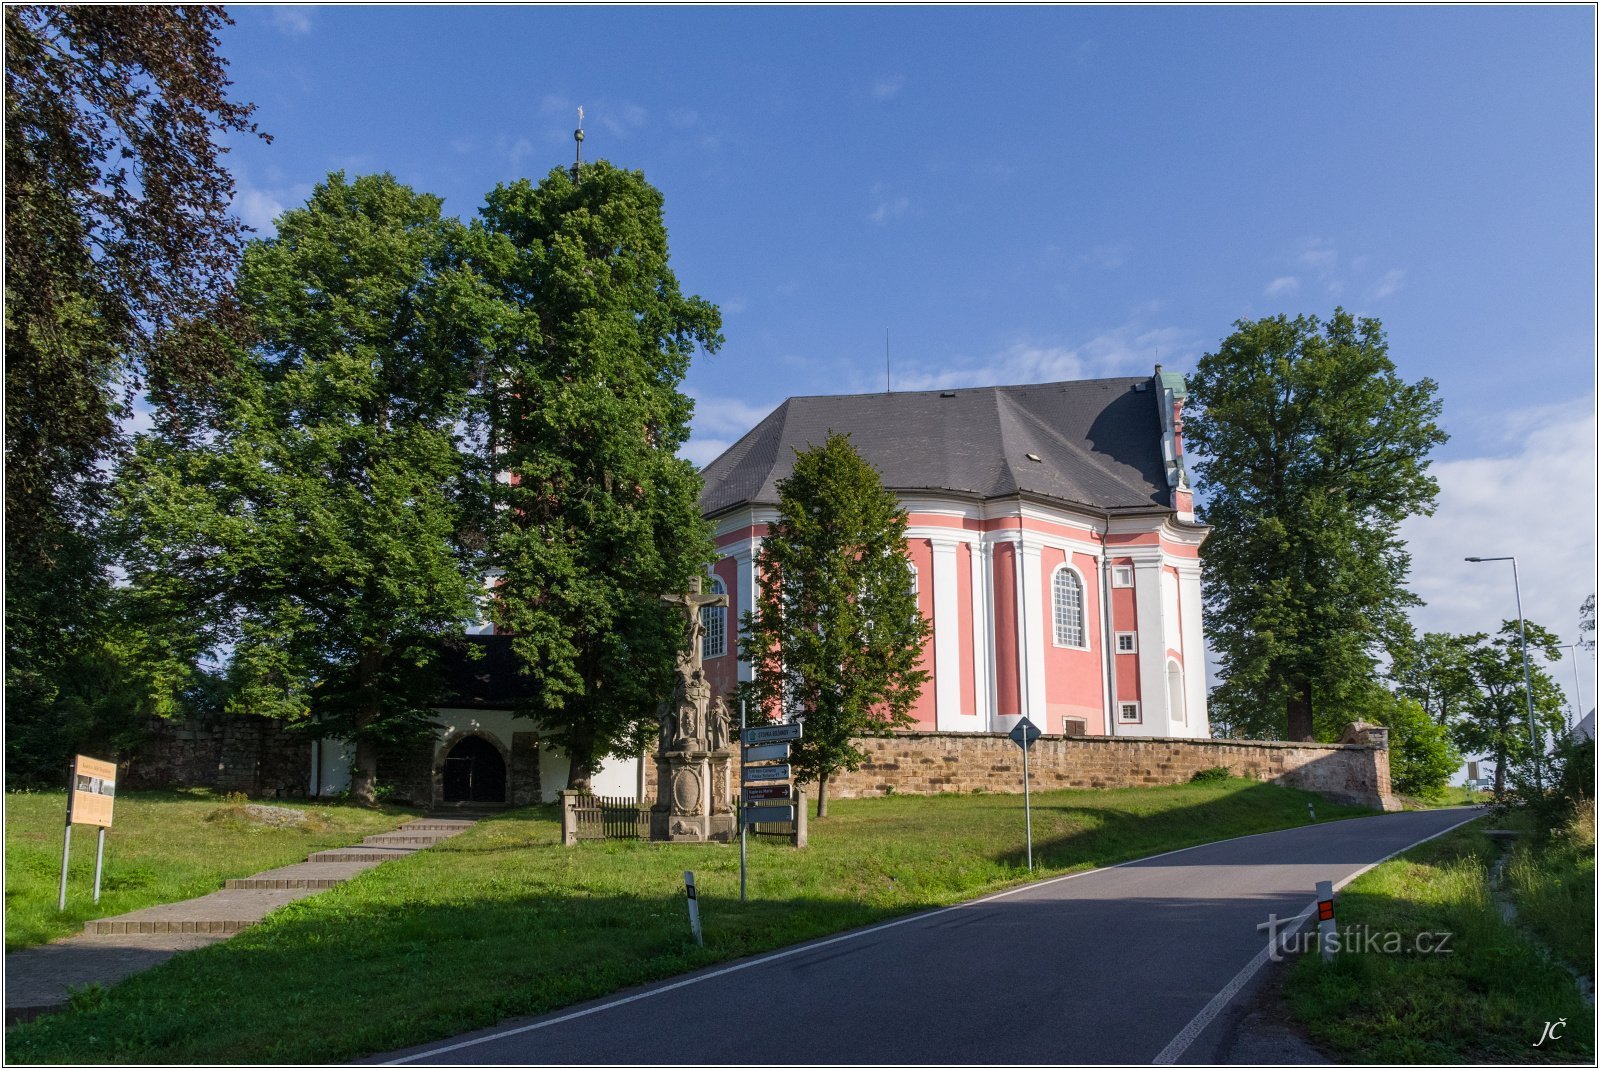 3-Božanovský church